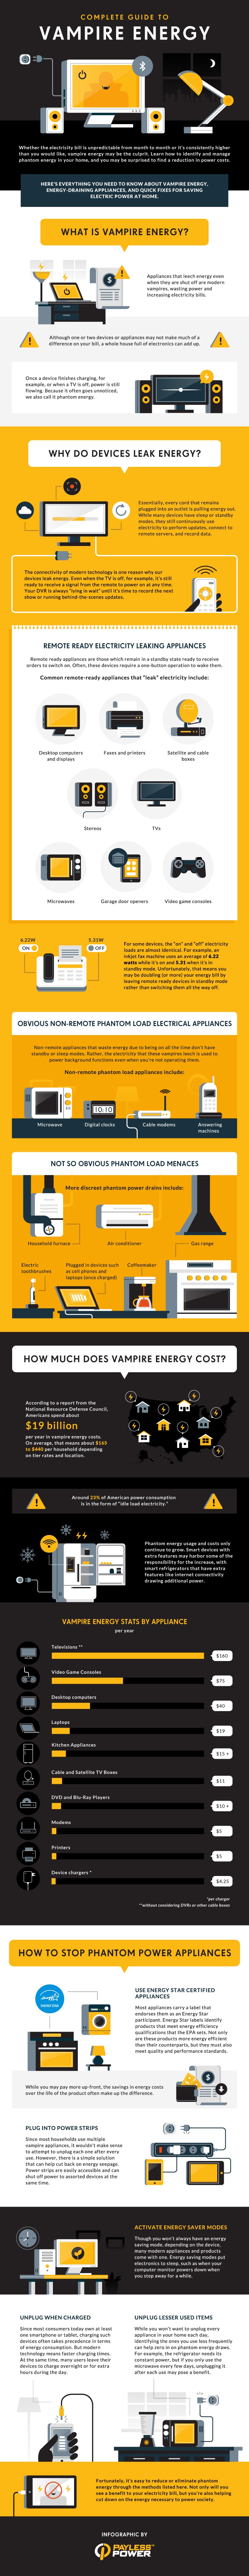 Vampire Energy Infographic